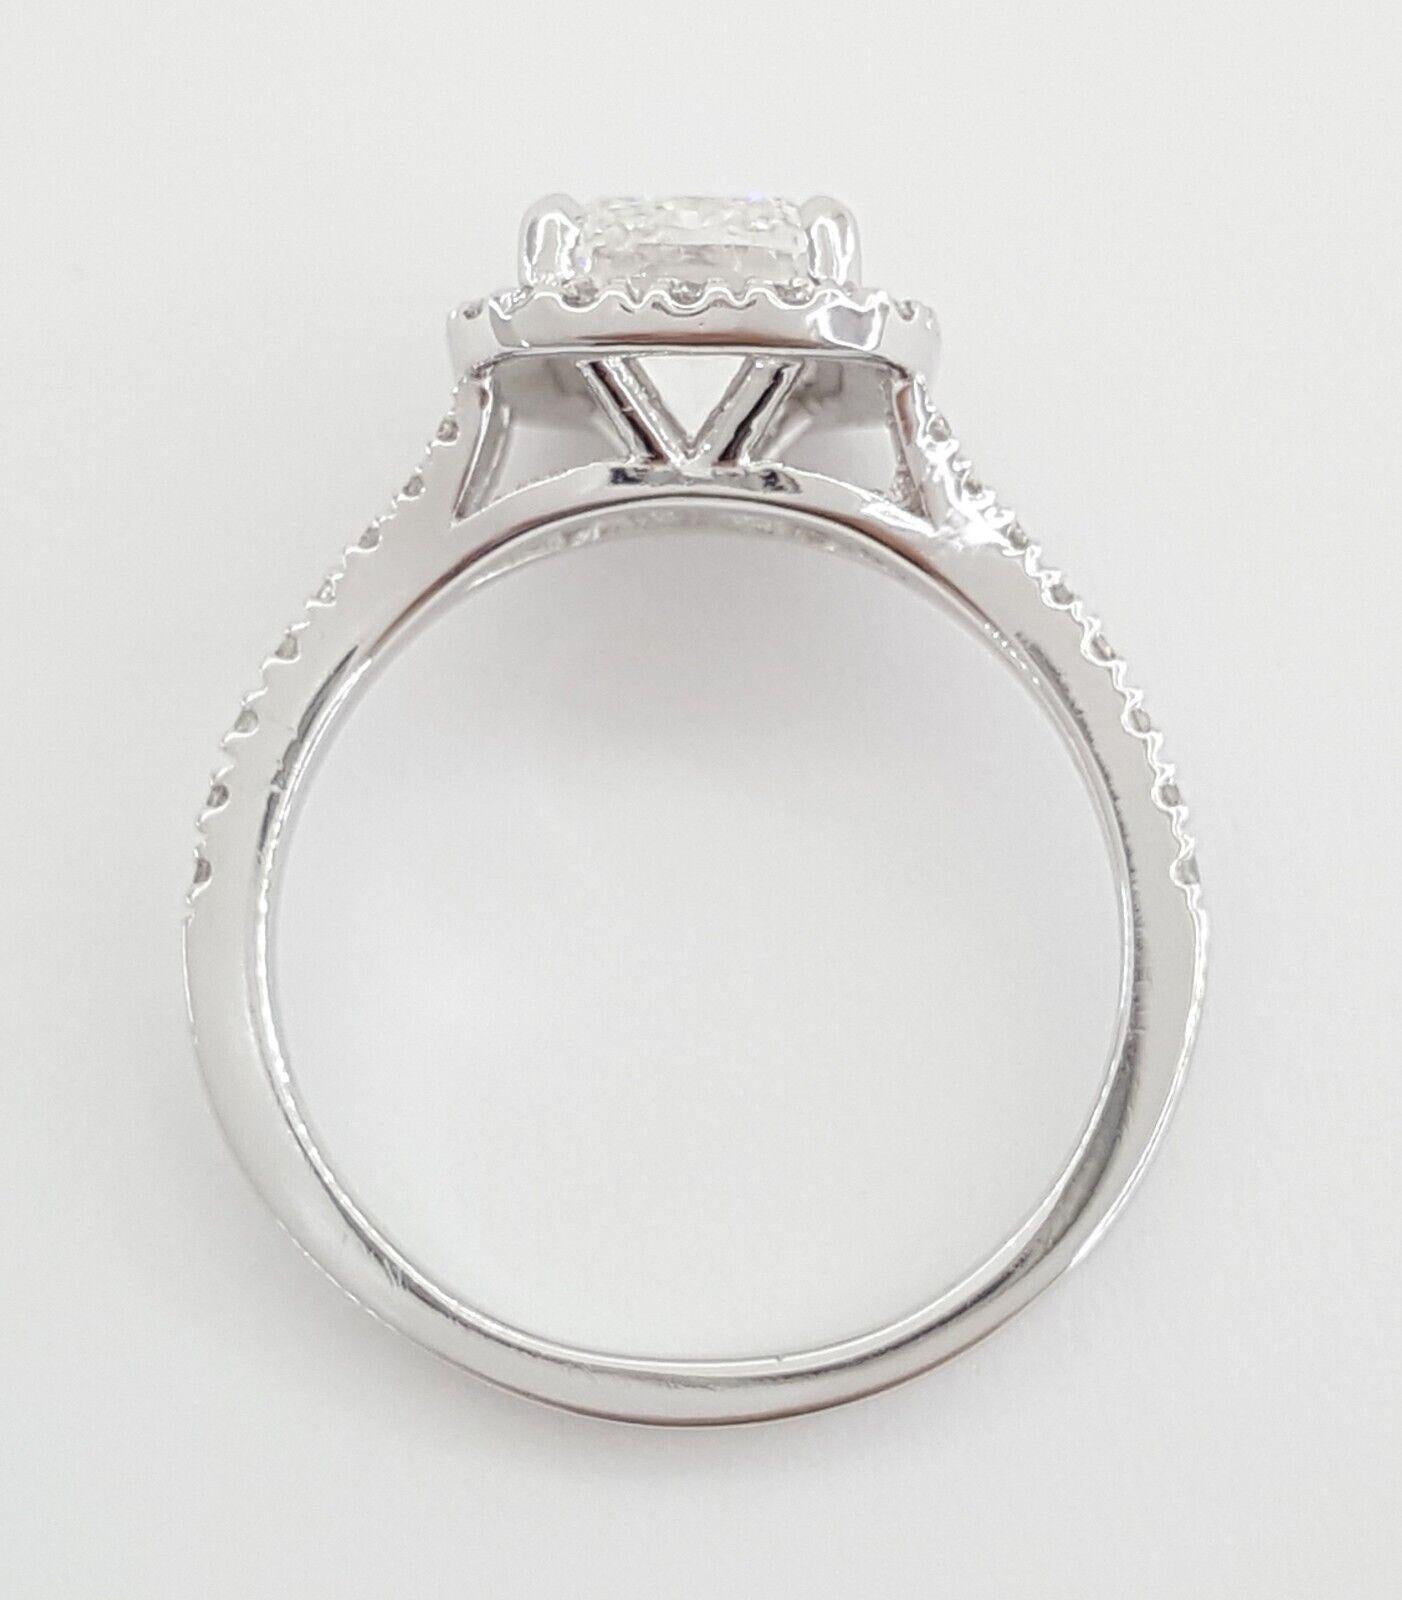 Bague de fiançailles exquise en platine ornée d'un superbe diamant halo de taille brillant en coussin allongé. Réalisé à la perfection par notre bijoutier interne qualifié, ce chef-d'œuvre est empreint d'élégance et de sophistication.

Cette bague